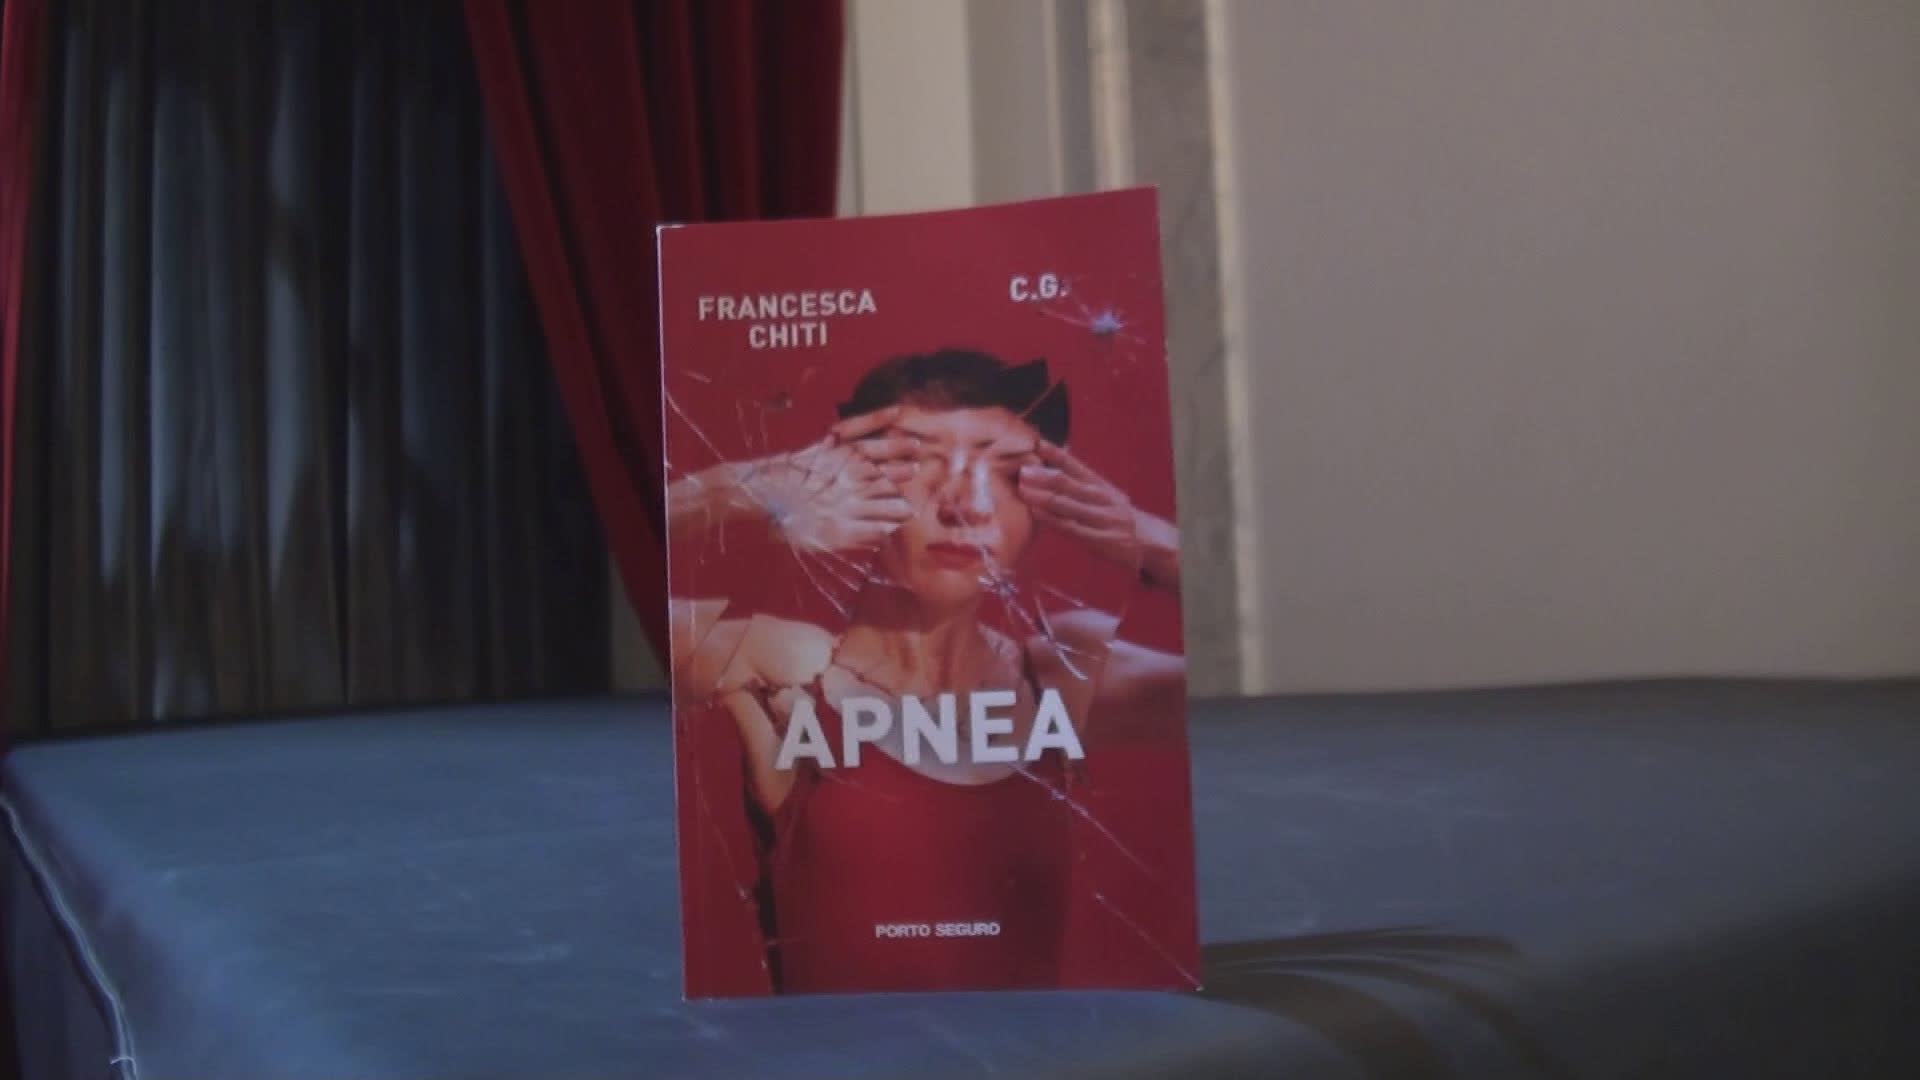 Pistoia - Presentato "Apnea", libro di Francesca Chiti